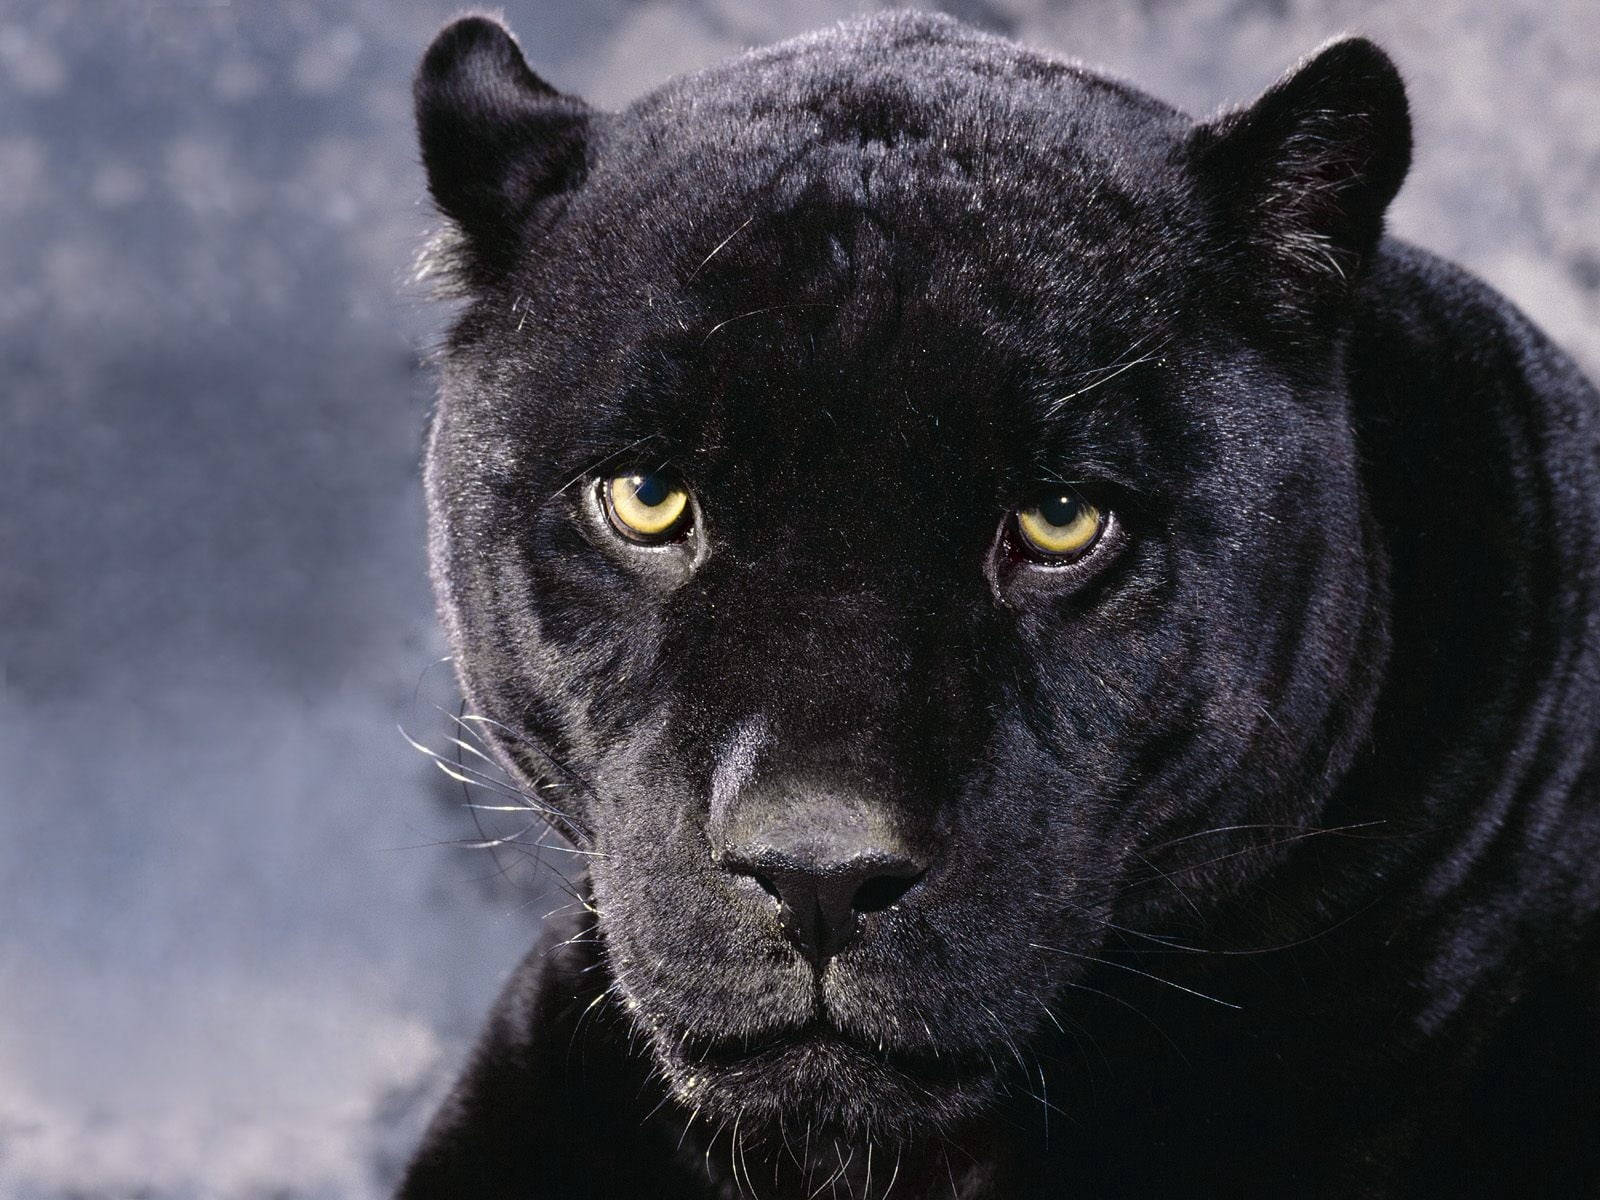 Free Black Panther Animal Wallpaper Downloads, [100+] Black Panther Animal  Wallpapers for FREE 